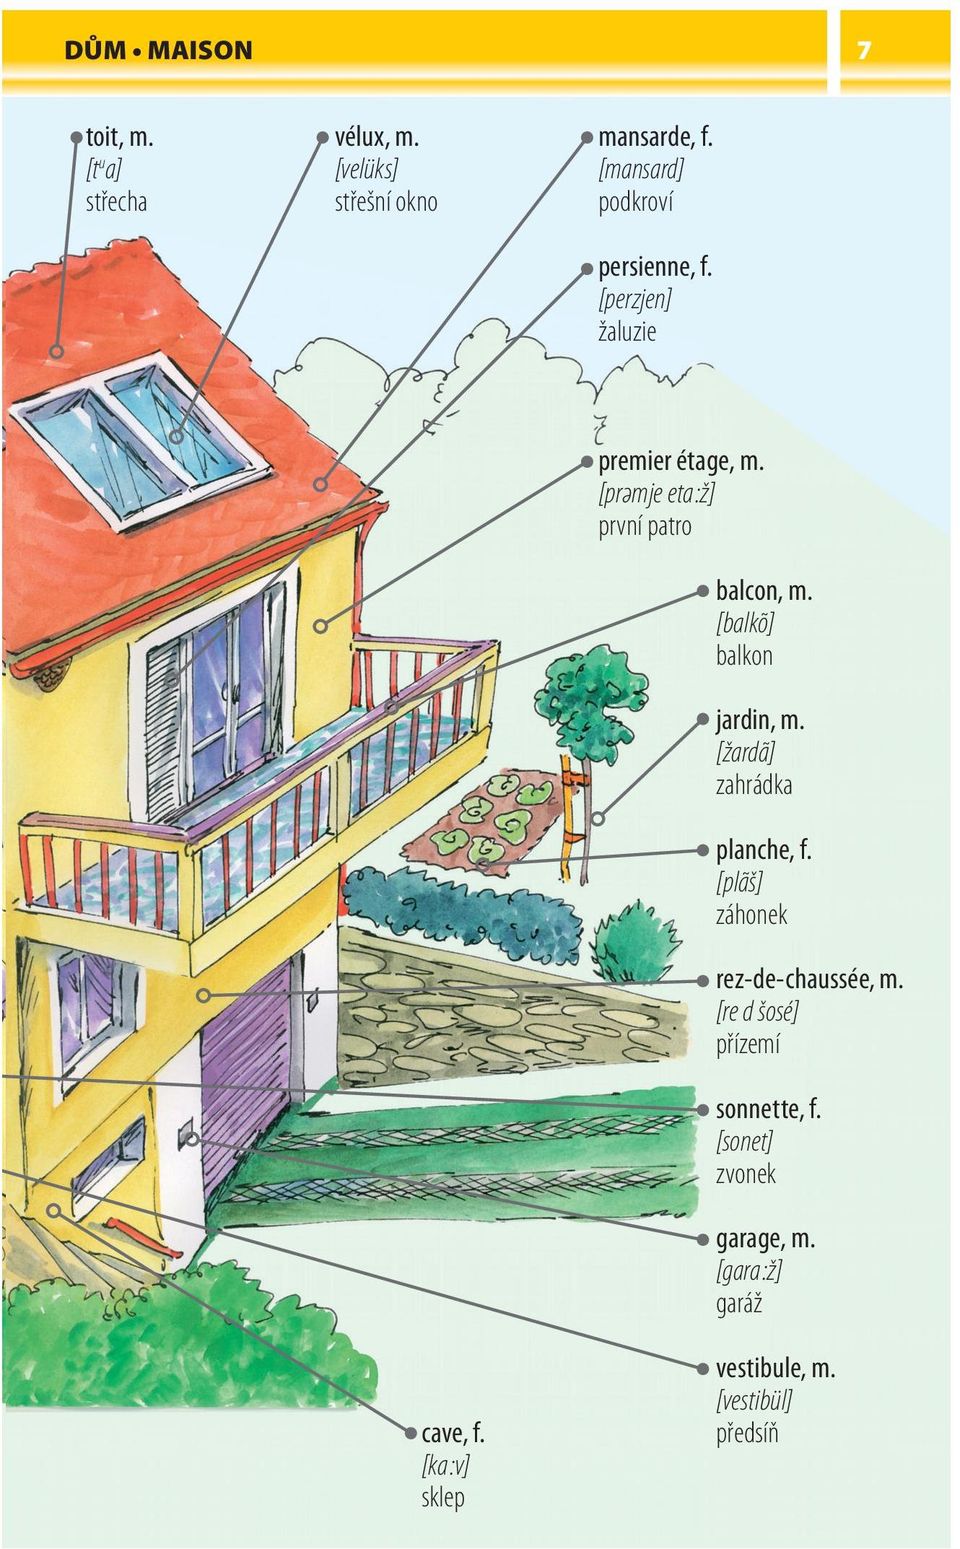 [prәmje eta :ž] první patro balcon, m. [balkõ] balkon jardin, m. [žardã] zahrádka planche, f.